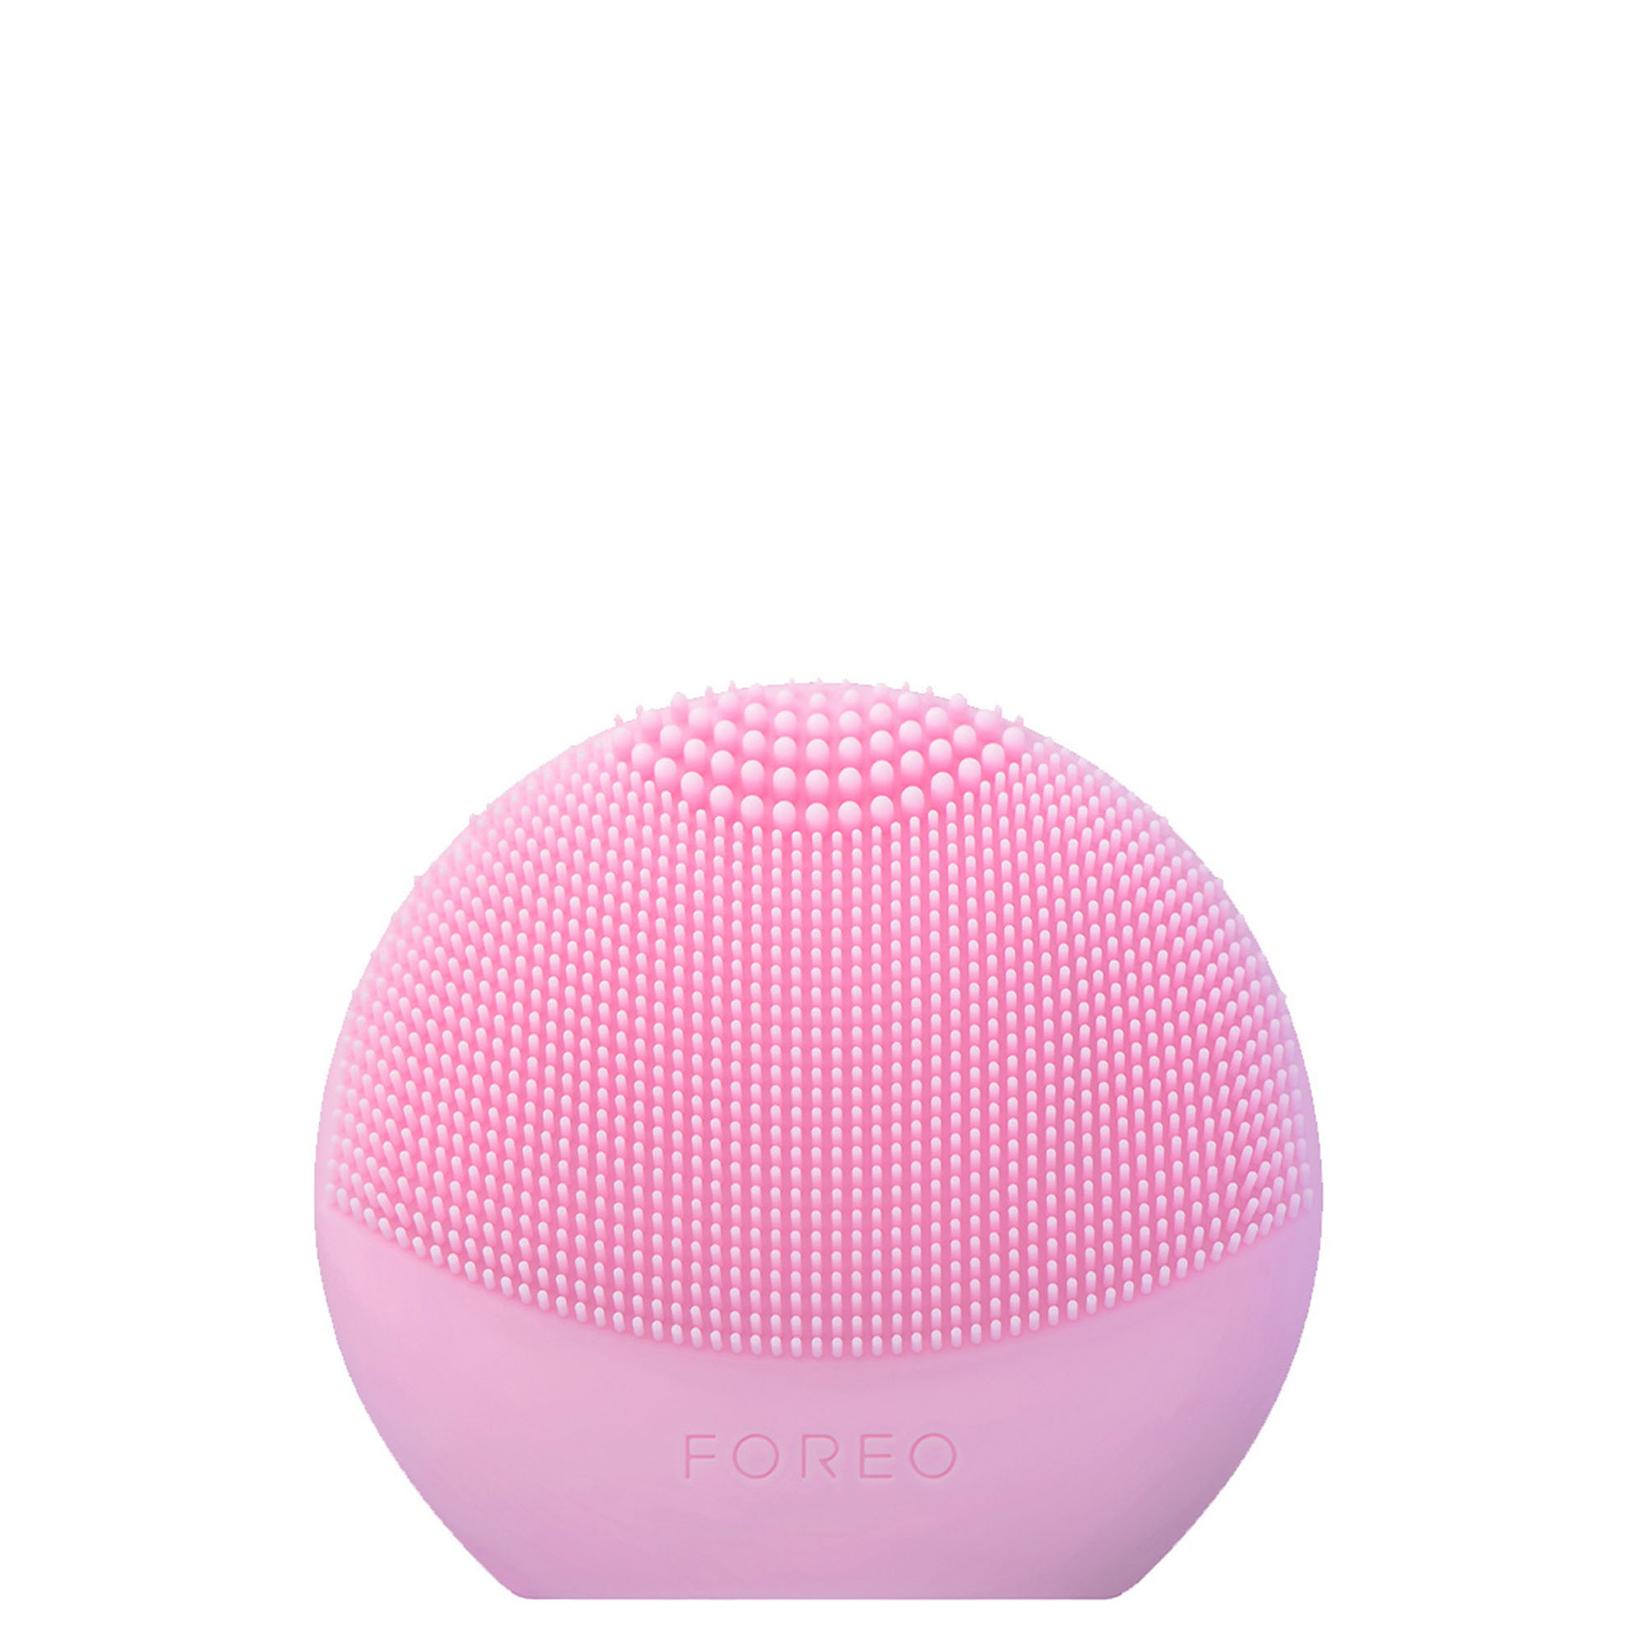 FOREO LUNA Fofo Pearl Pink pametni uređaj za čišćenje lica za senzorima za analizu kože